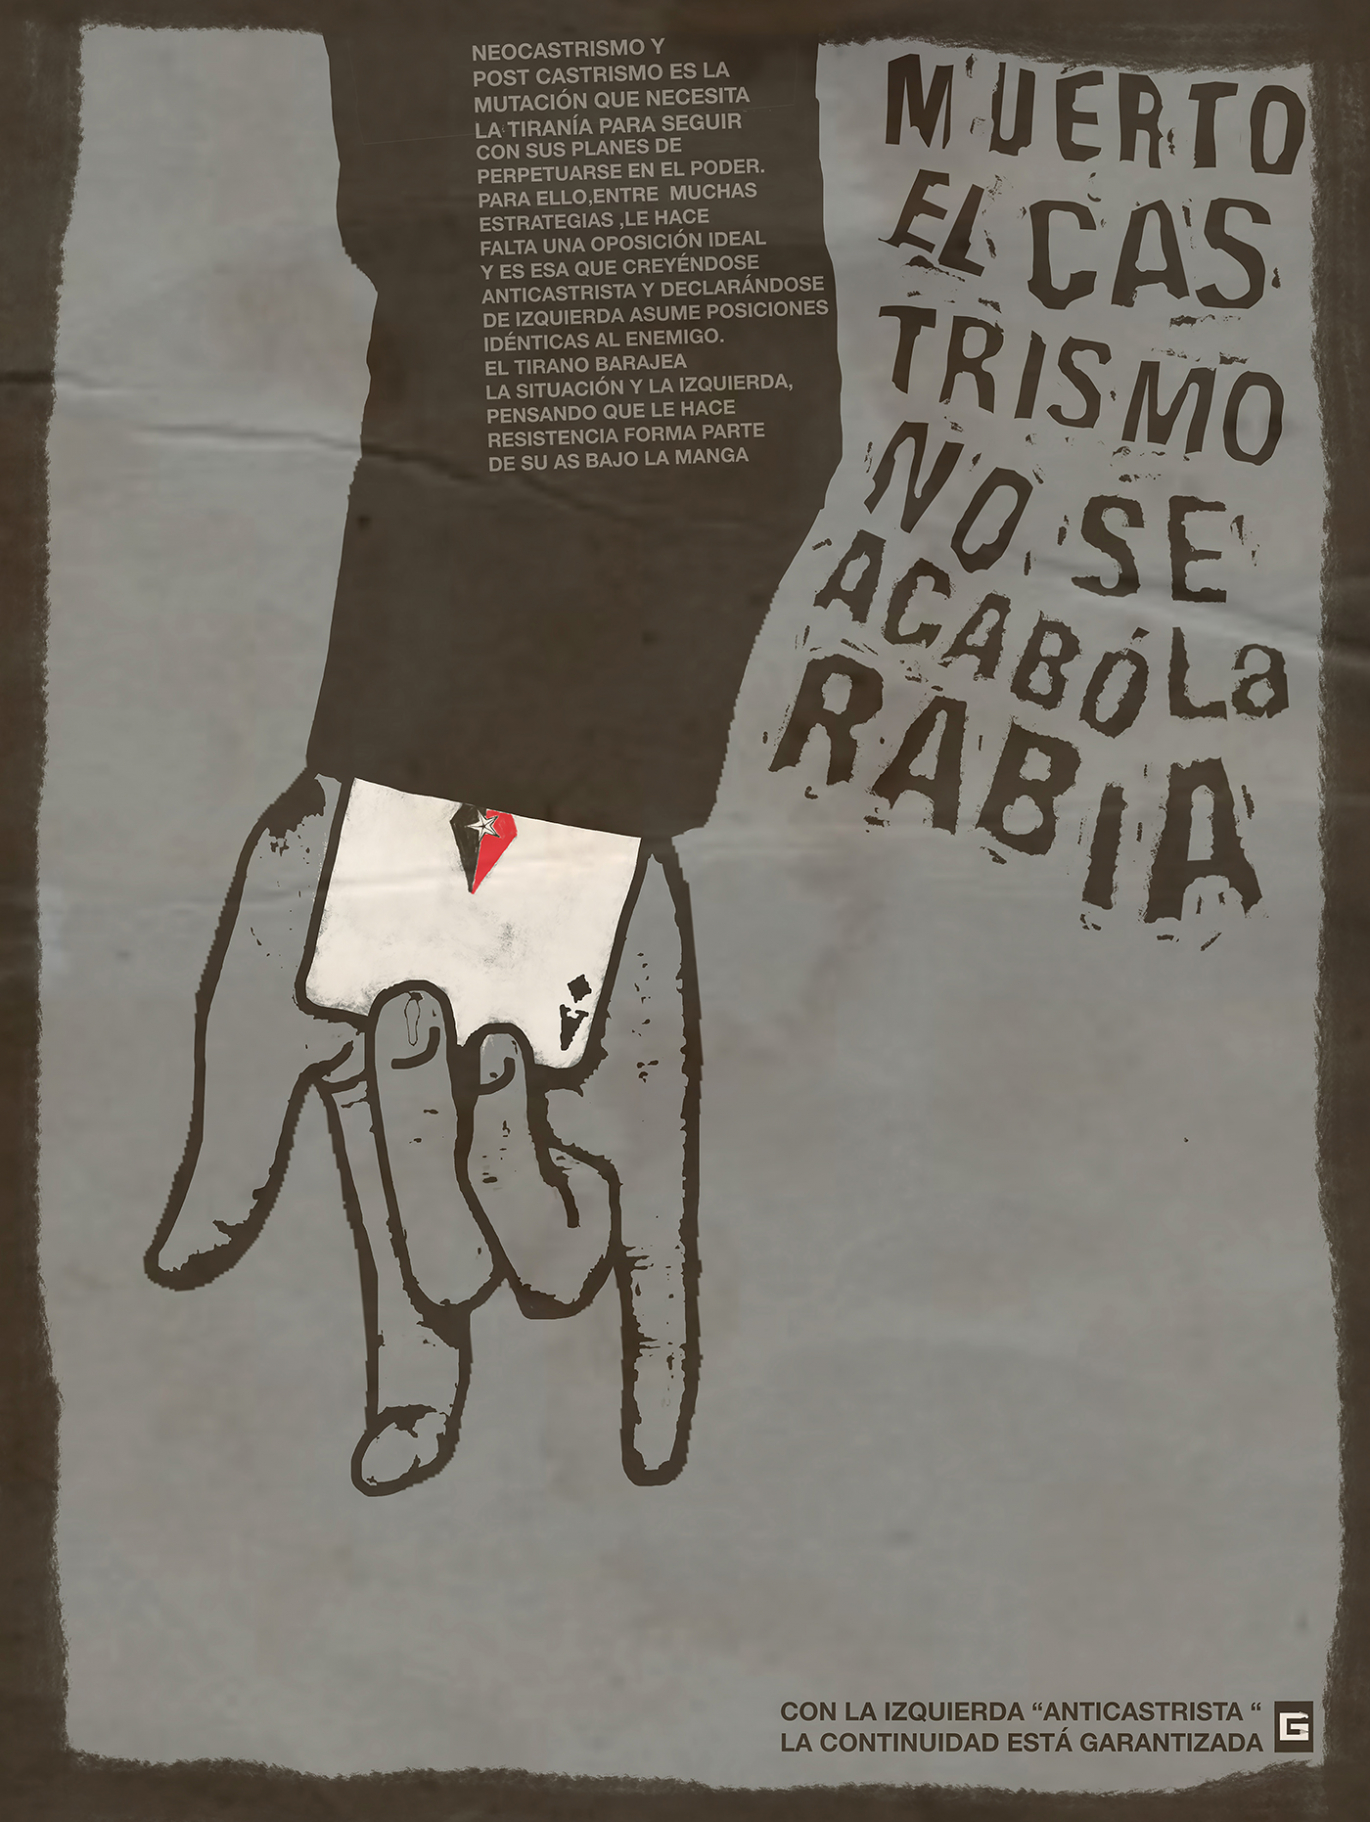 Gorki Aguila, Muerto el Castrismo no se acabó la rabia, 2020, digital print limited edition, 1:10